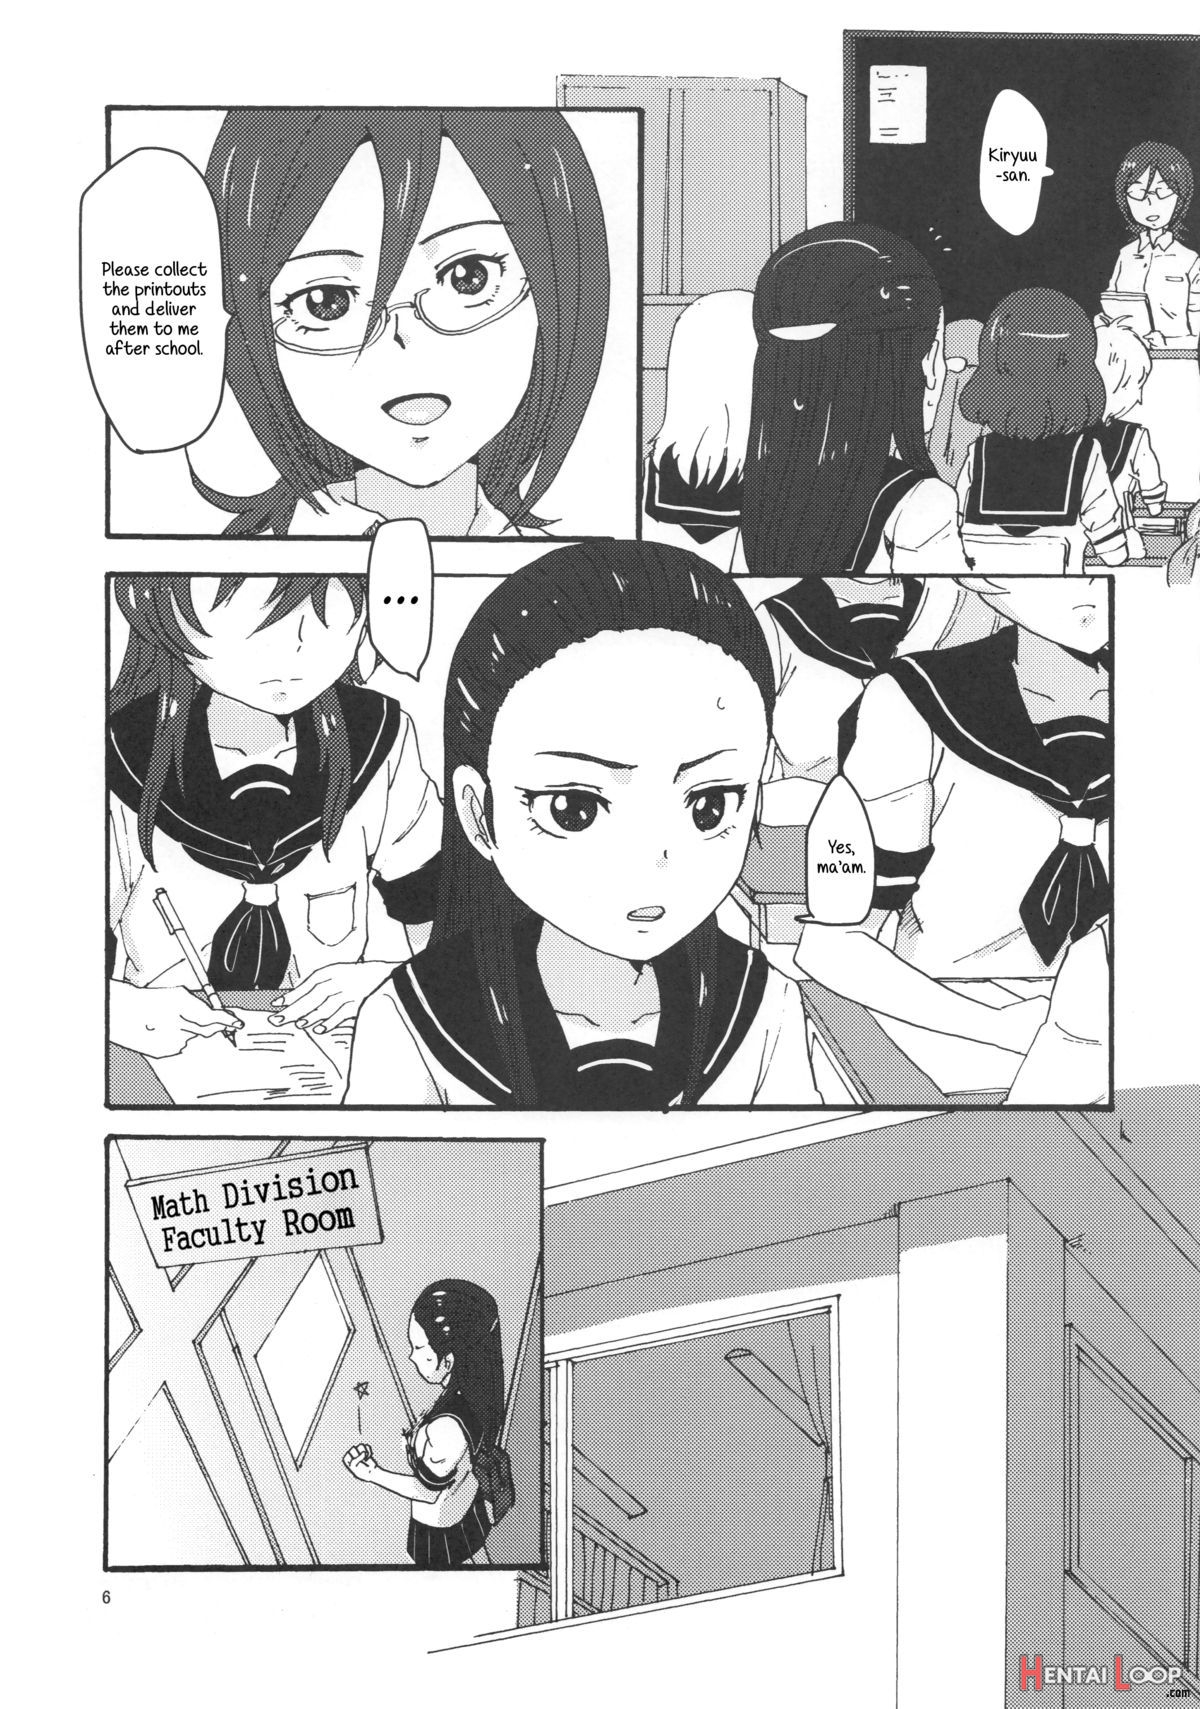 Kiryuu Sensei To Kiryuu-san! page 6